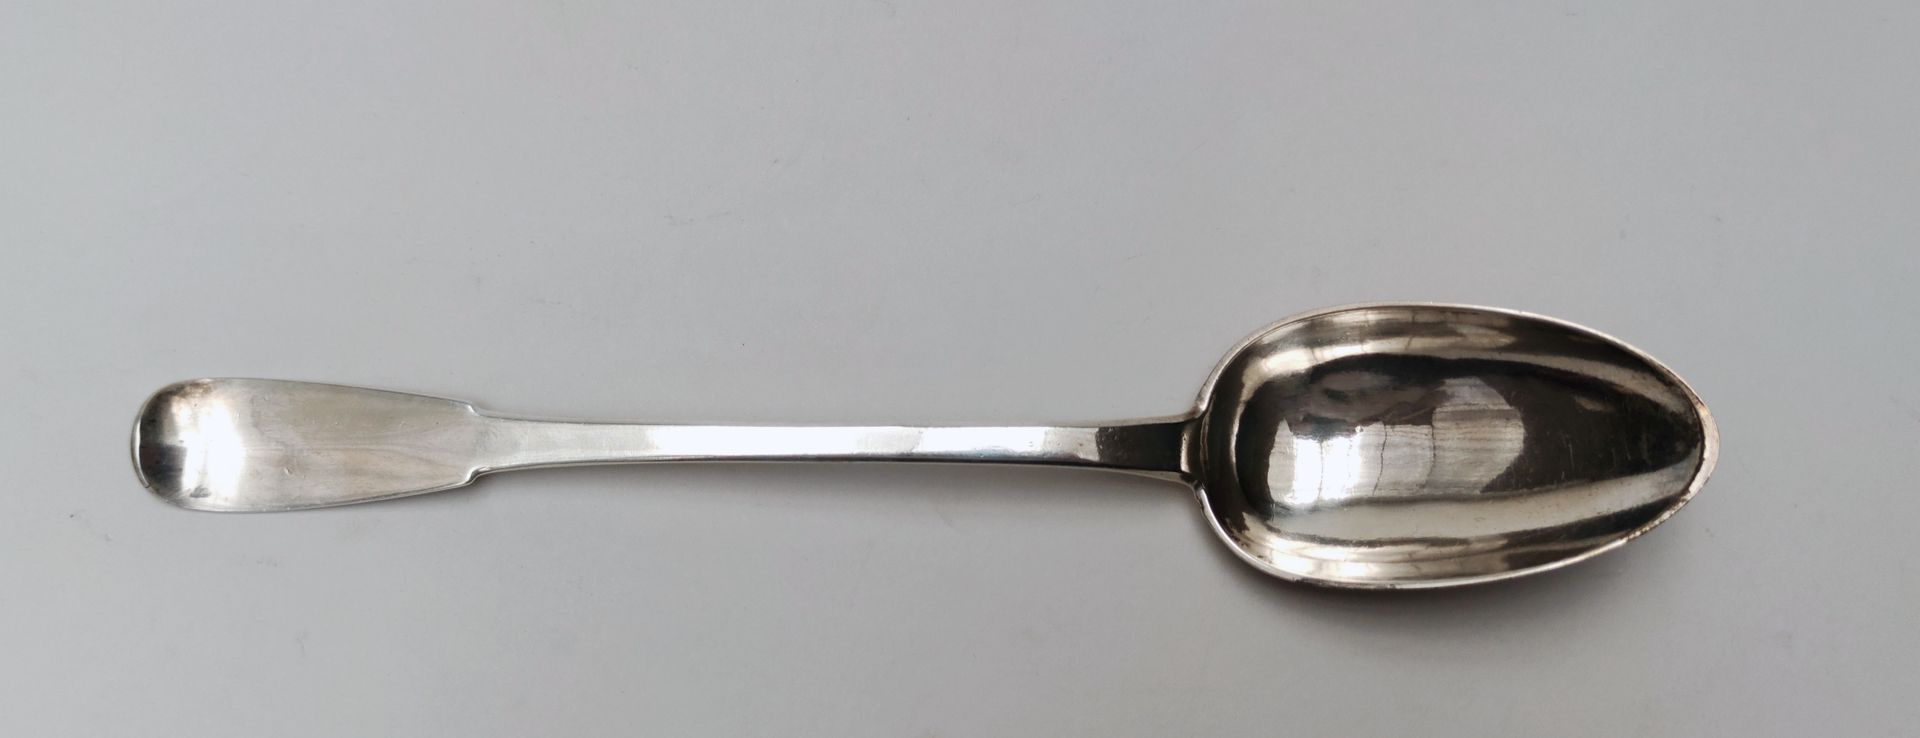 Null 
18世纪的银质炖汤勺，在锅铲的背面标有：D.ROHAUT，四个拳头可见

重量：144克（勺子略有损坏